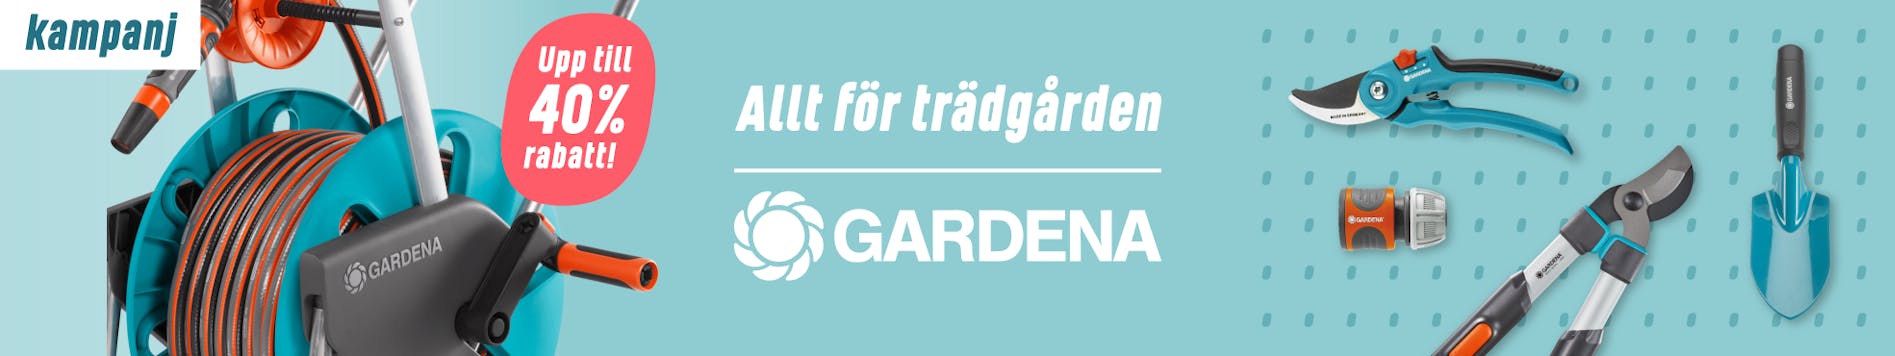 https://www.proffsmagasinet.se/gardena-kampanj